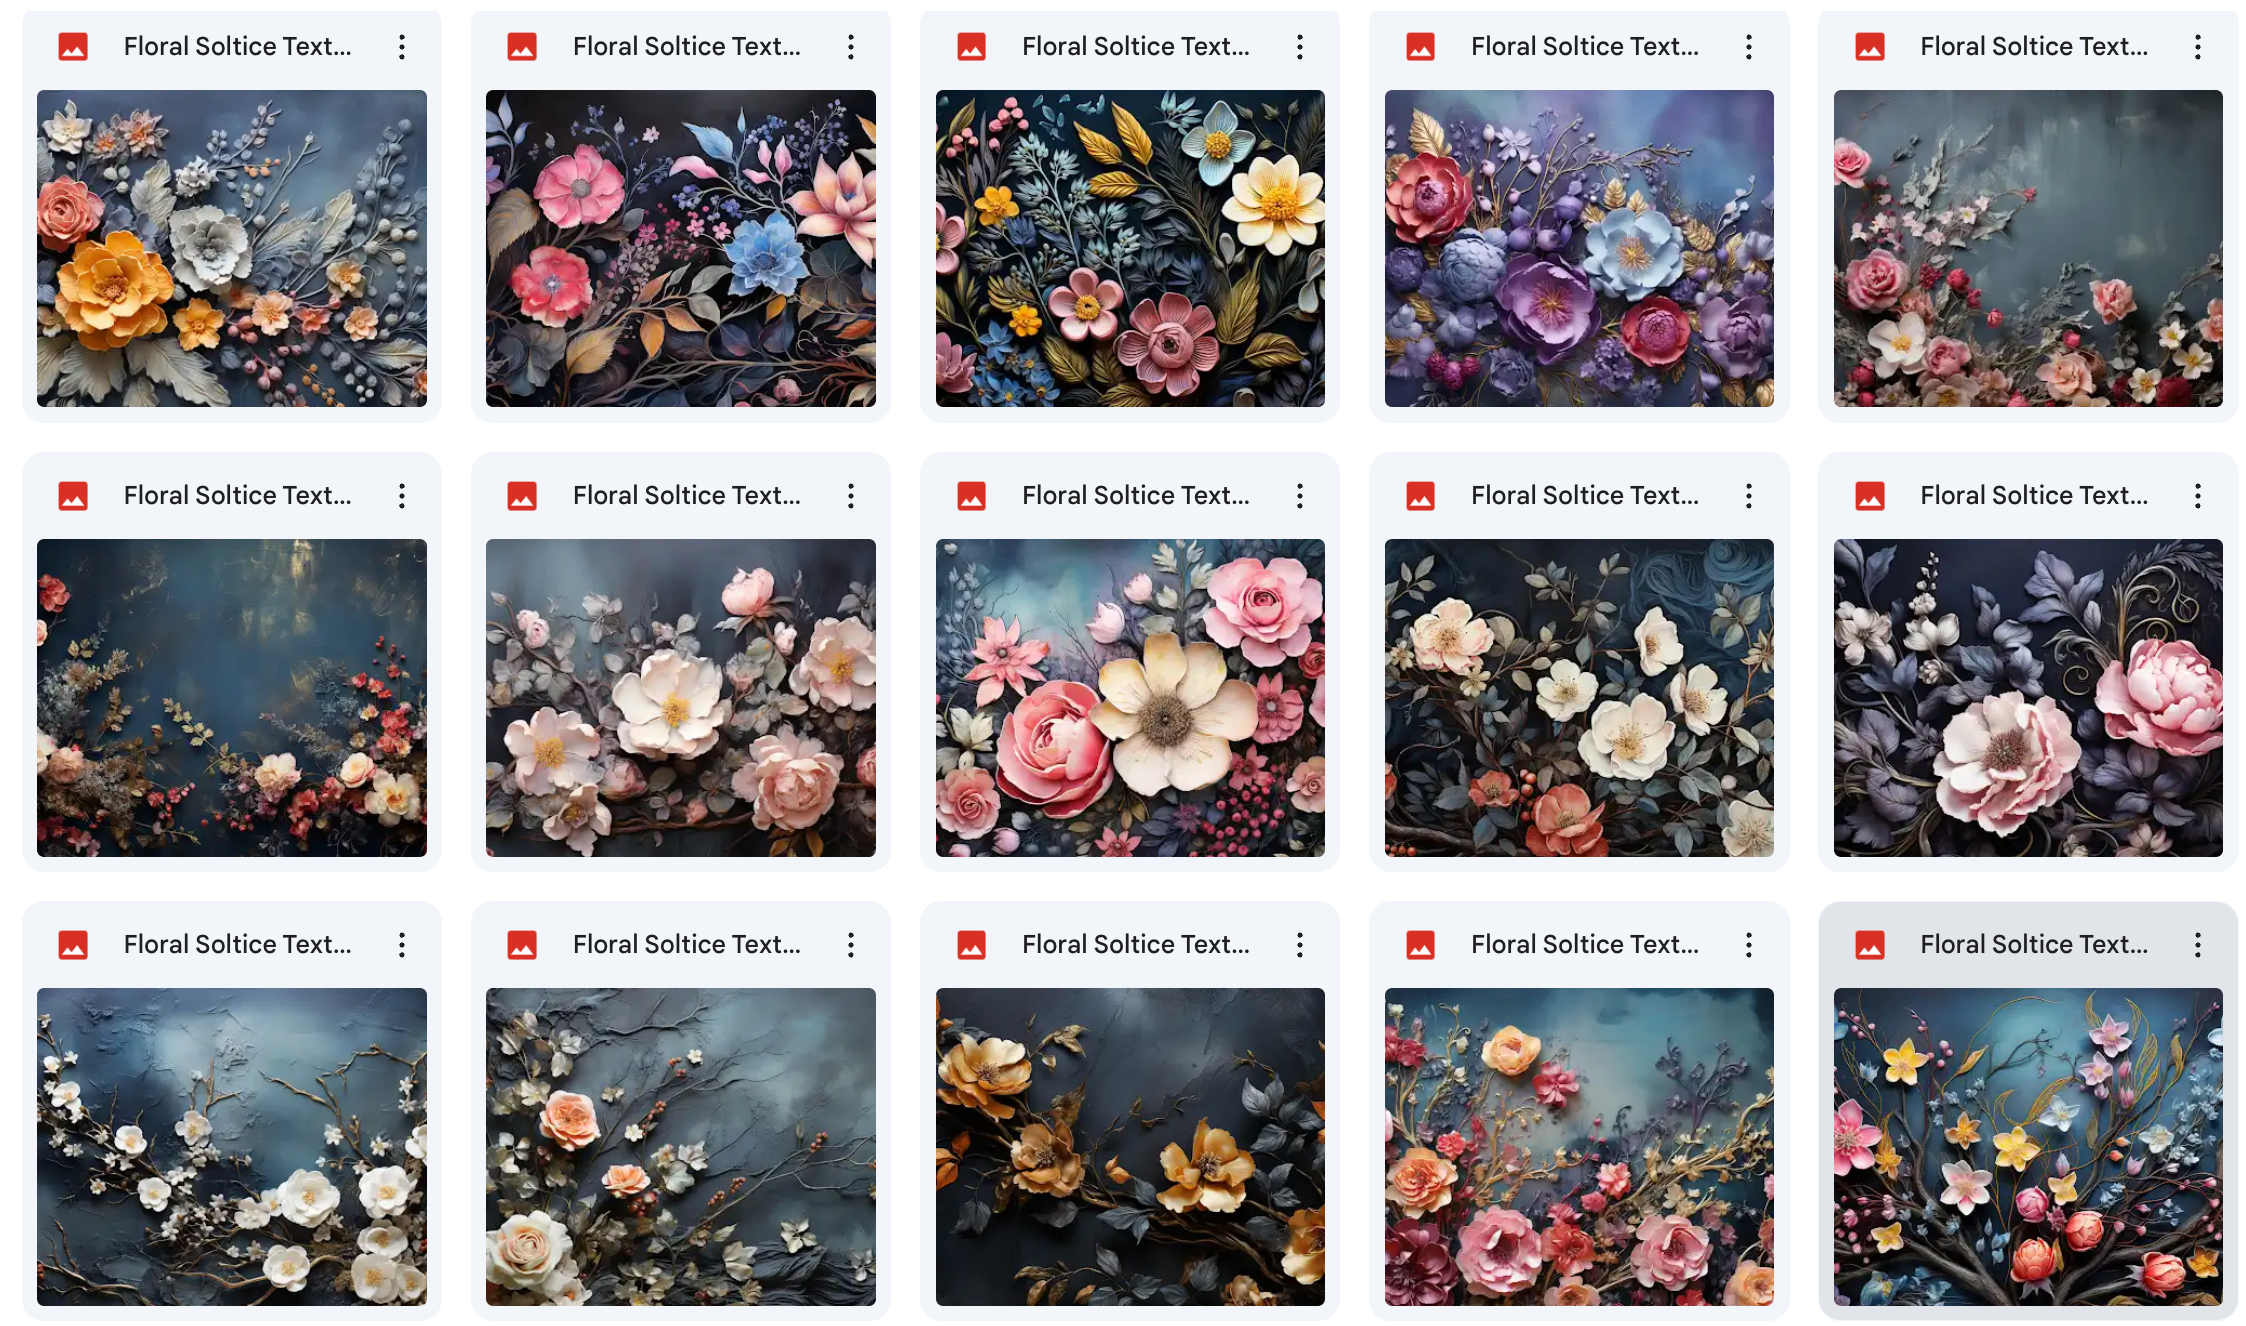 Ultimate Floral Solstice Texture Bundle - Meg Bitton Productions